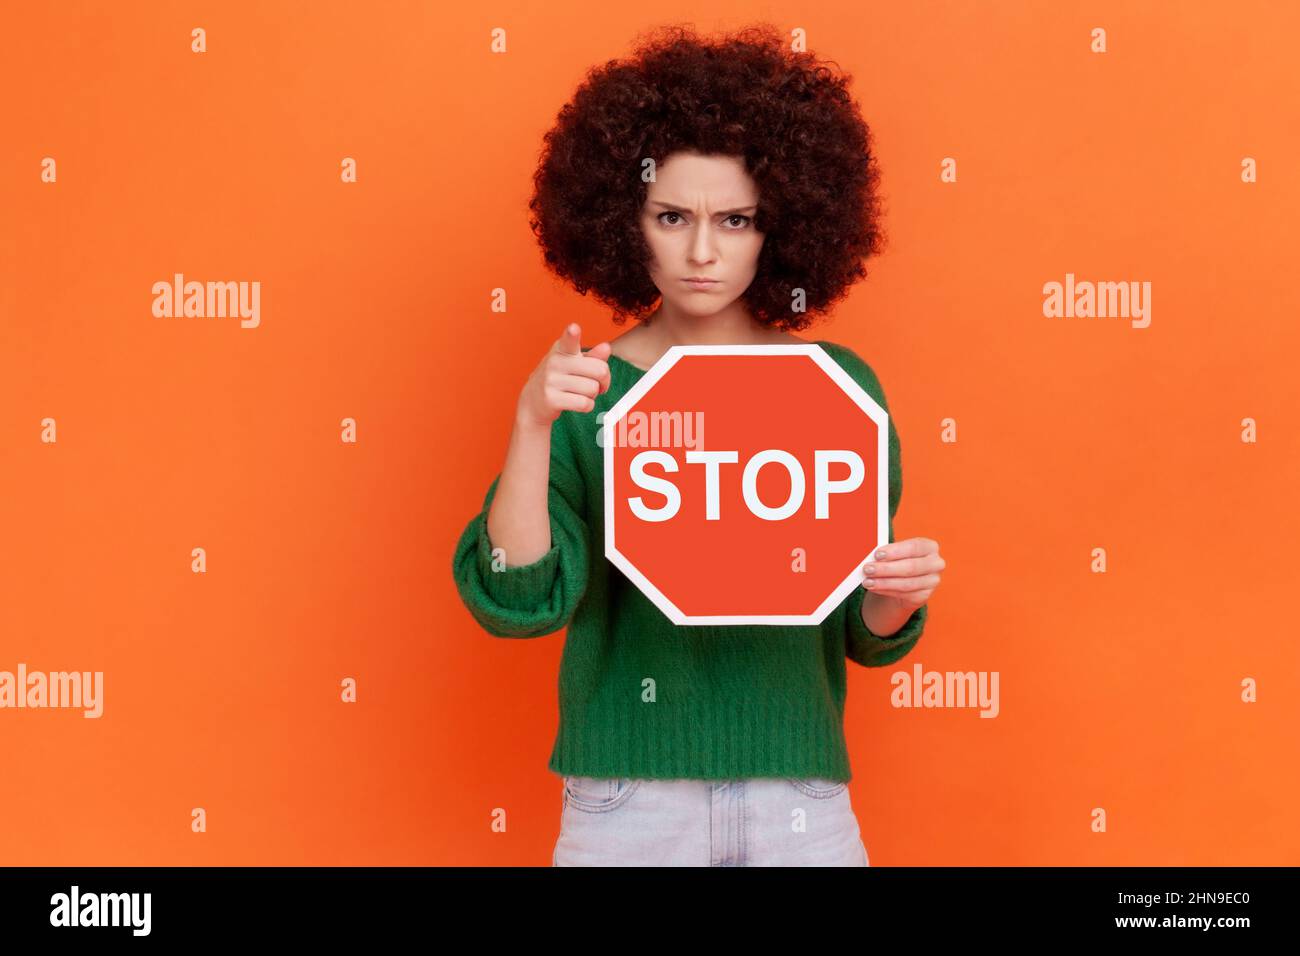 Hey, hör auf. Herrische Frau mit Afro-Frisur, die einen grünen Pullover im Casual-Stil trägt, der mit dem Finger auf die Kamera zeigt und in den Händen ein rotes Verkehrsstopschild zeigt. Innenaufnahme des Studios isoliert auf orangefarbenem Hintergrund. Stockfoto